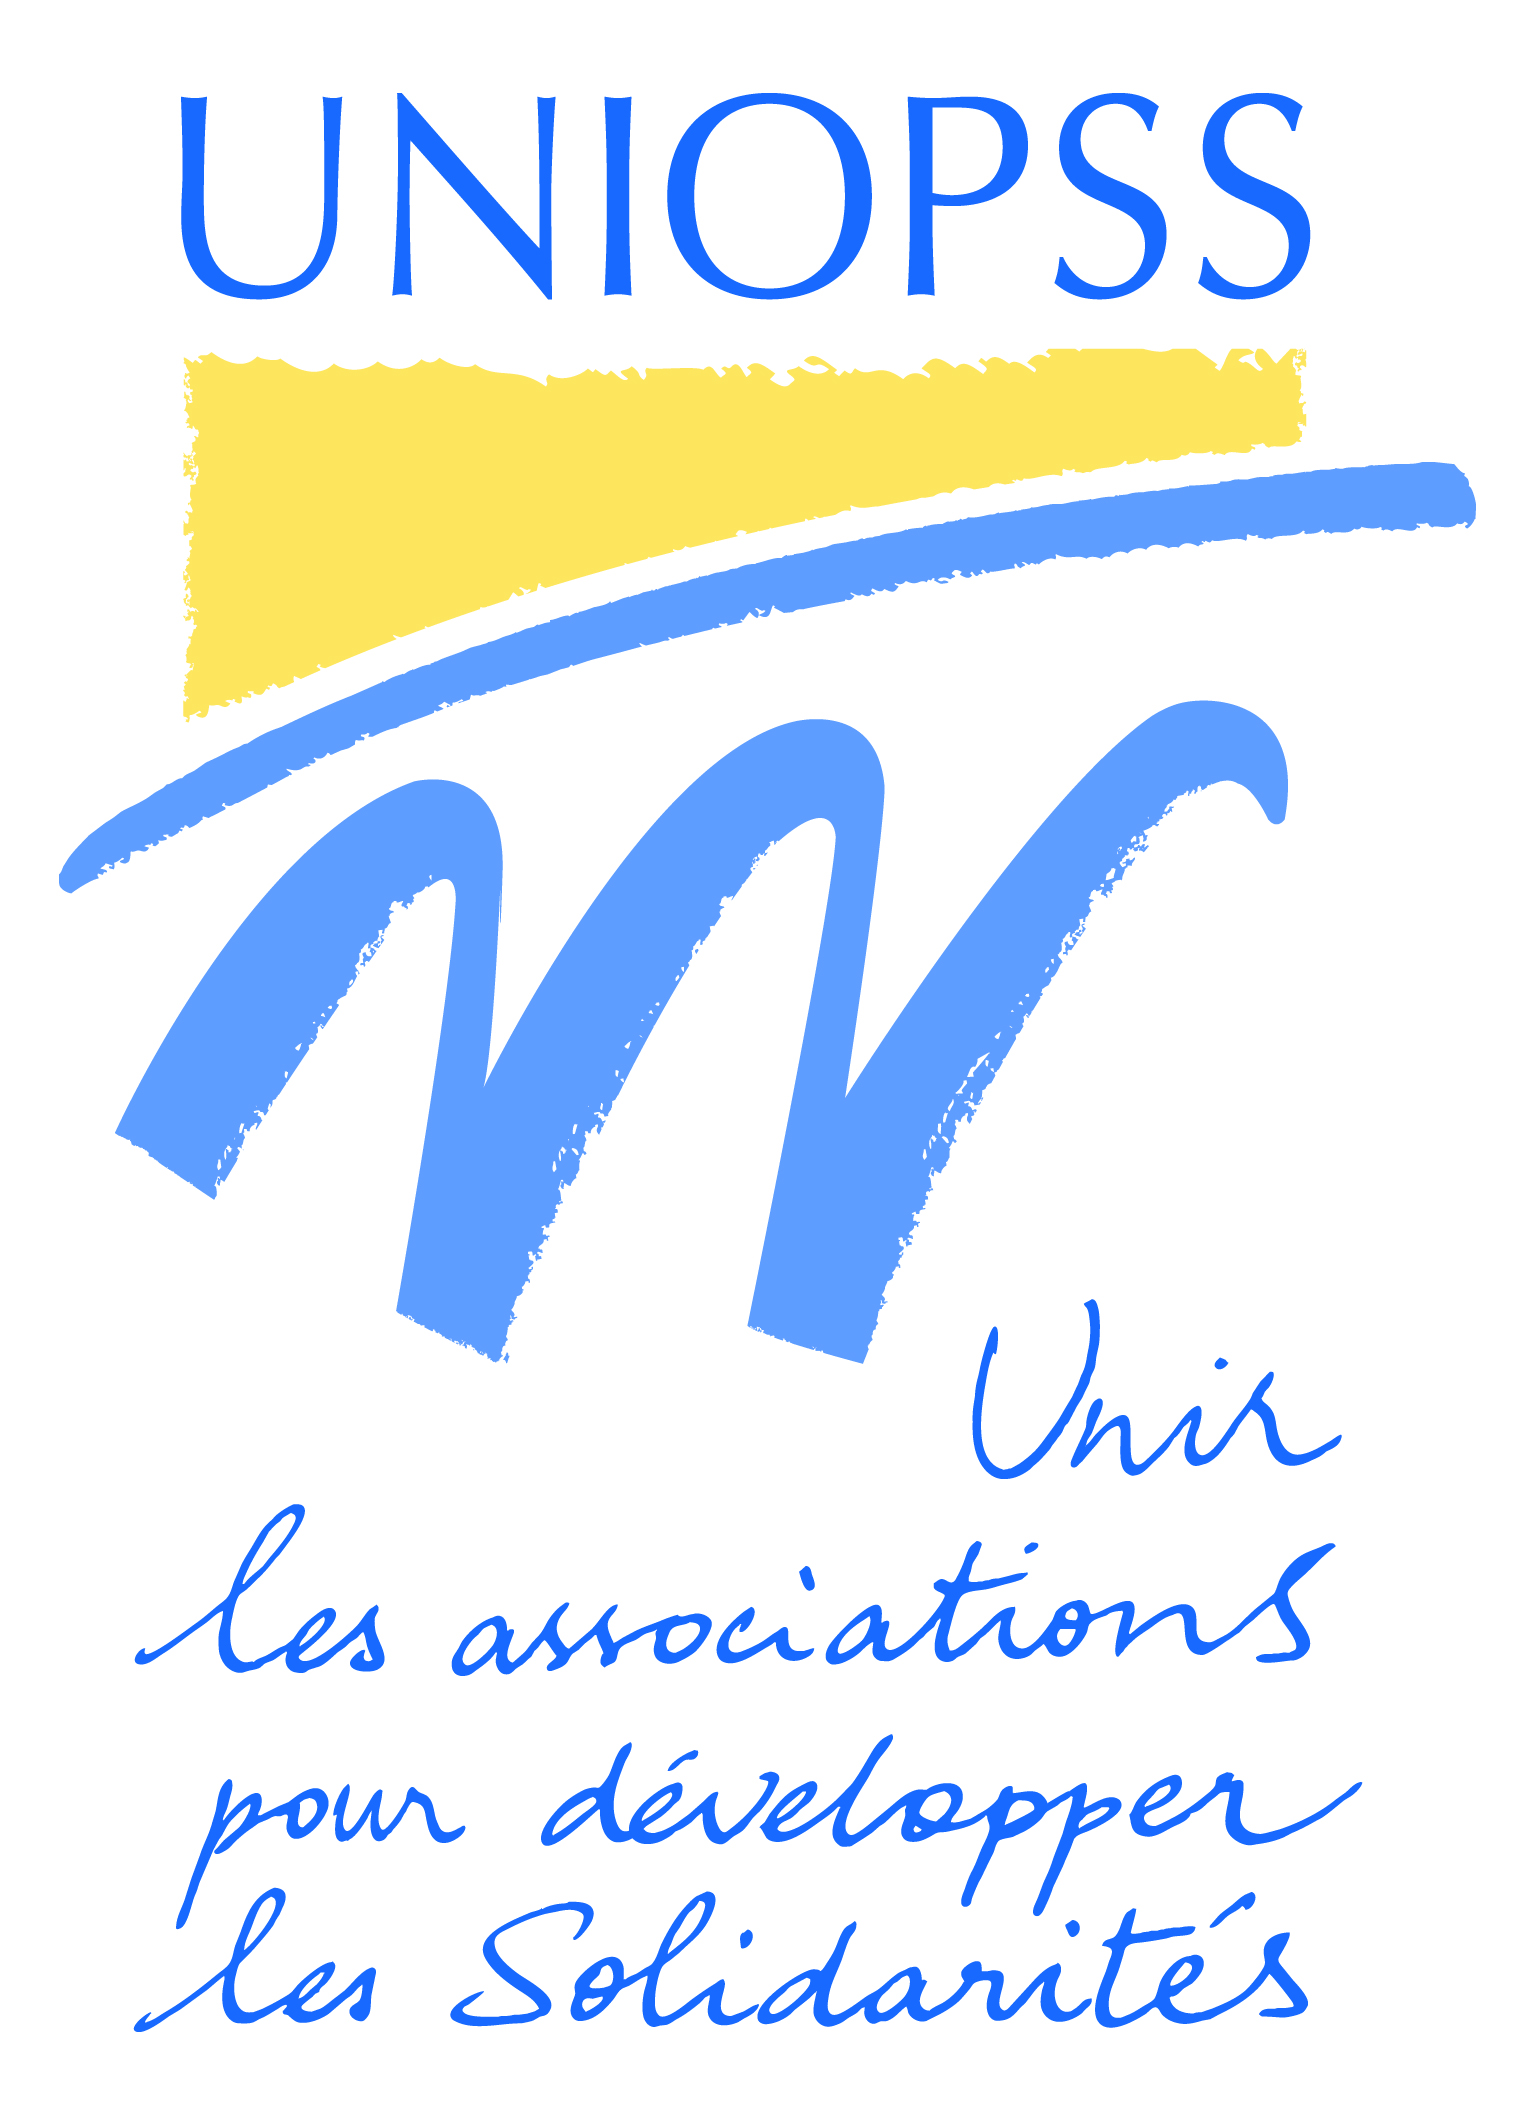 Uniopss - Unir les Associations pour développer les solidarités en France